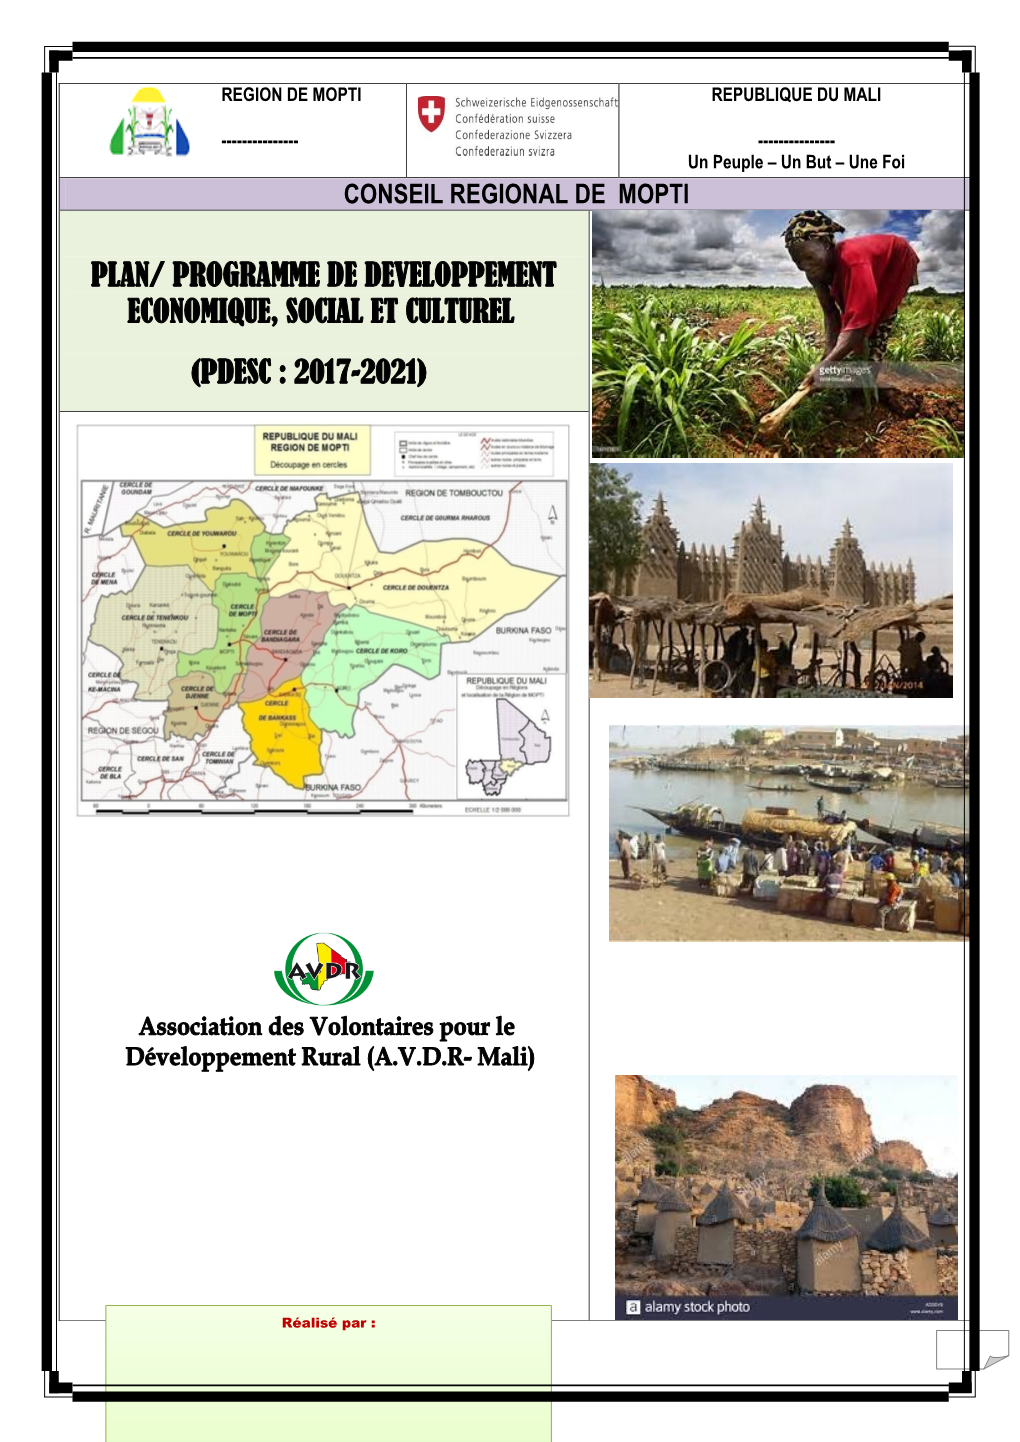 Plan/ Programme De Developpement Economique, Social Et Culturel (Pdesc : 2017-2021)